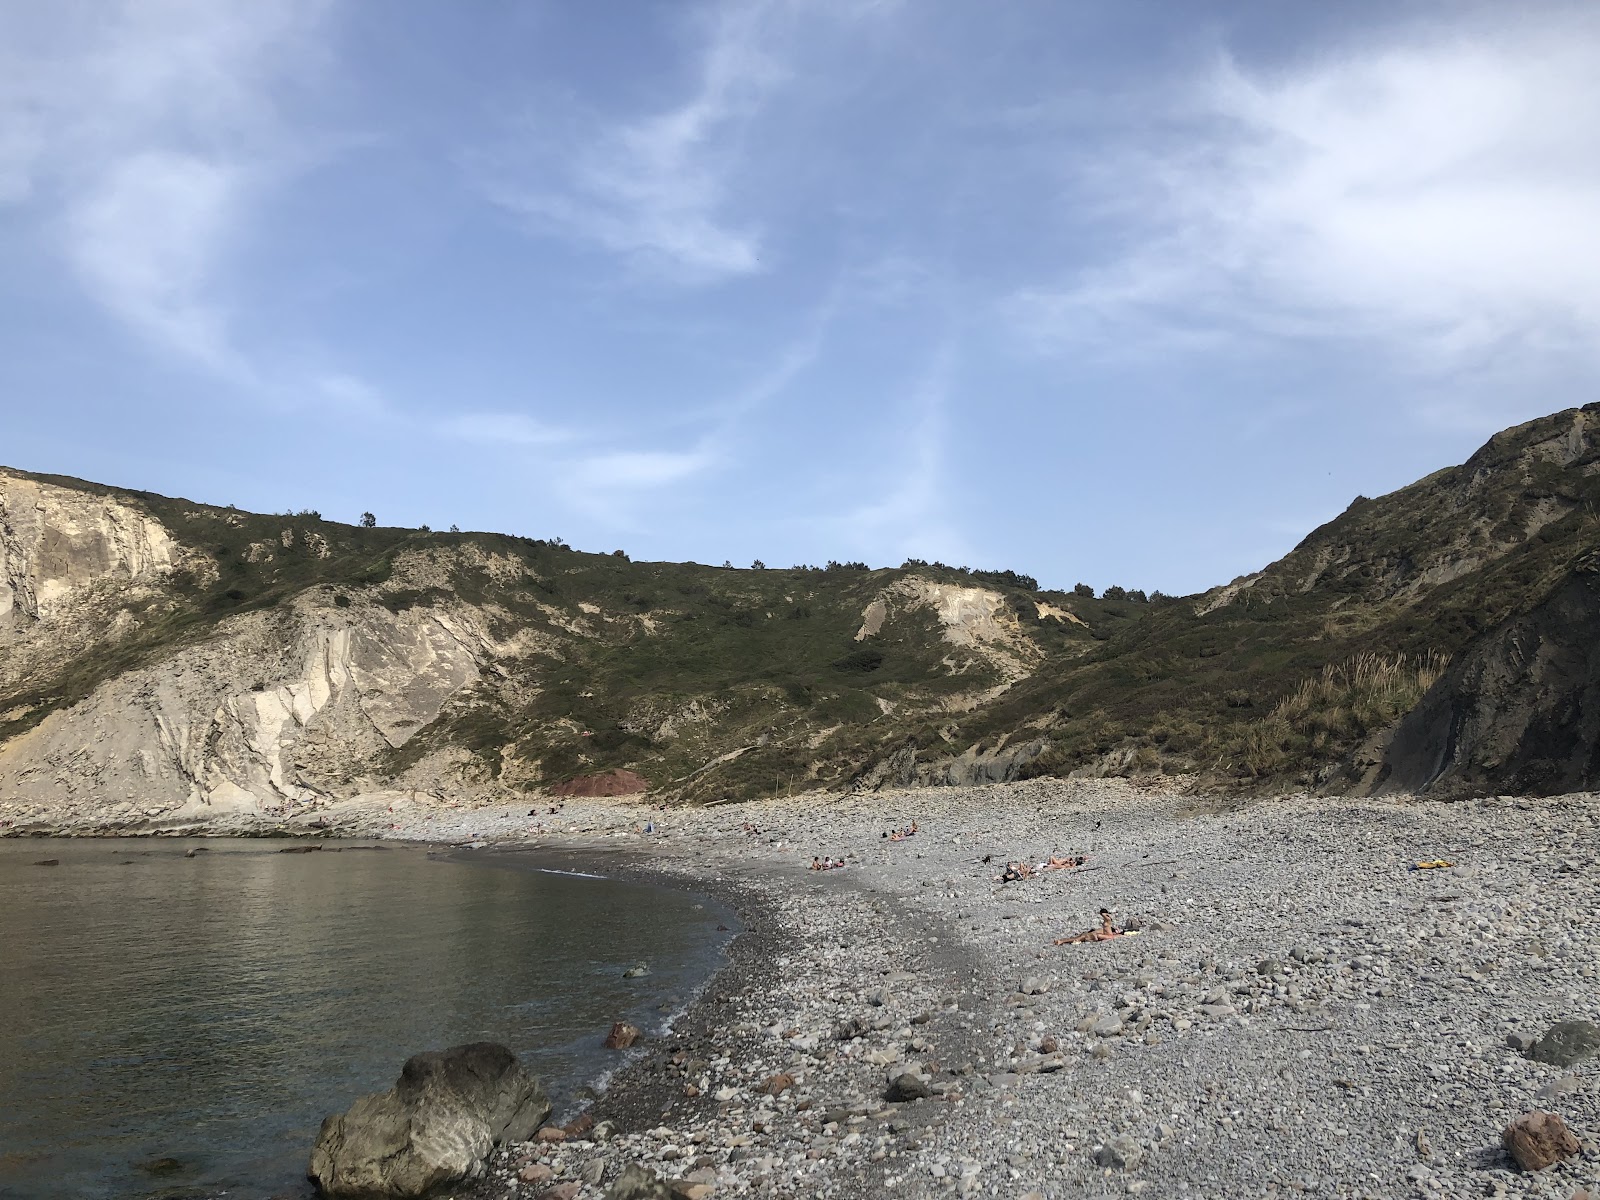 Fotografija Menakoz hondartza podprto z obalami